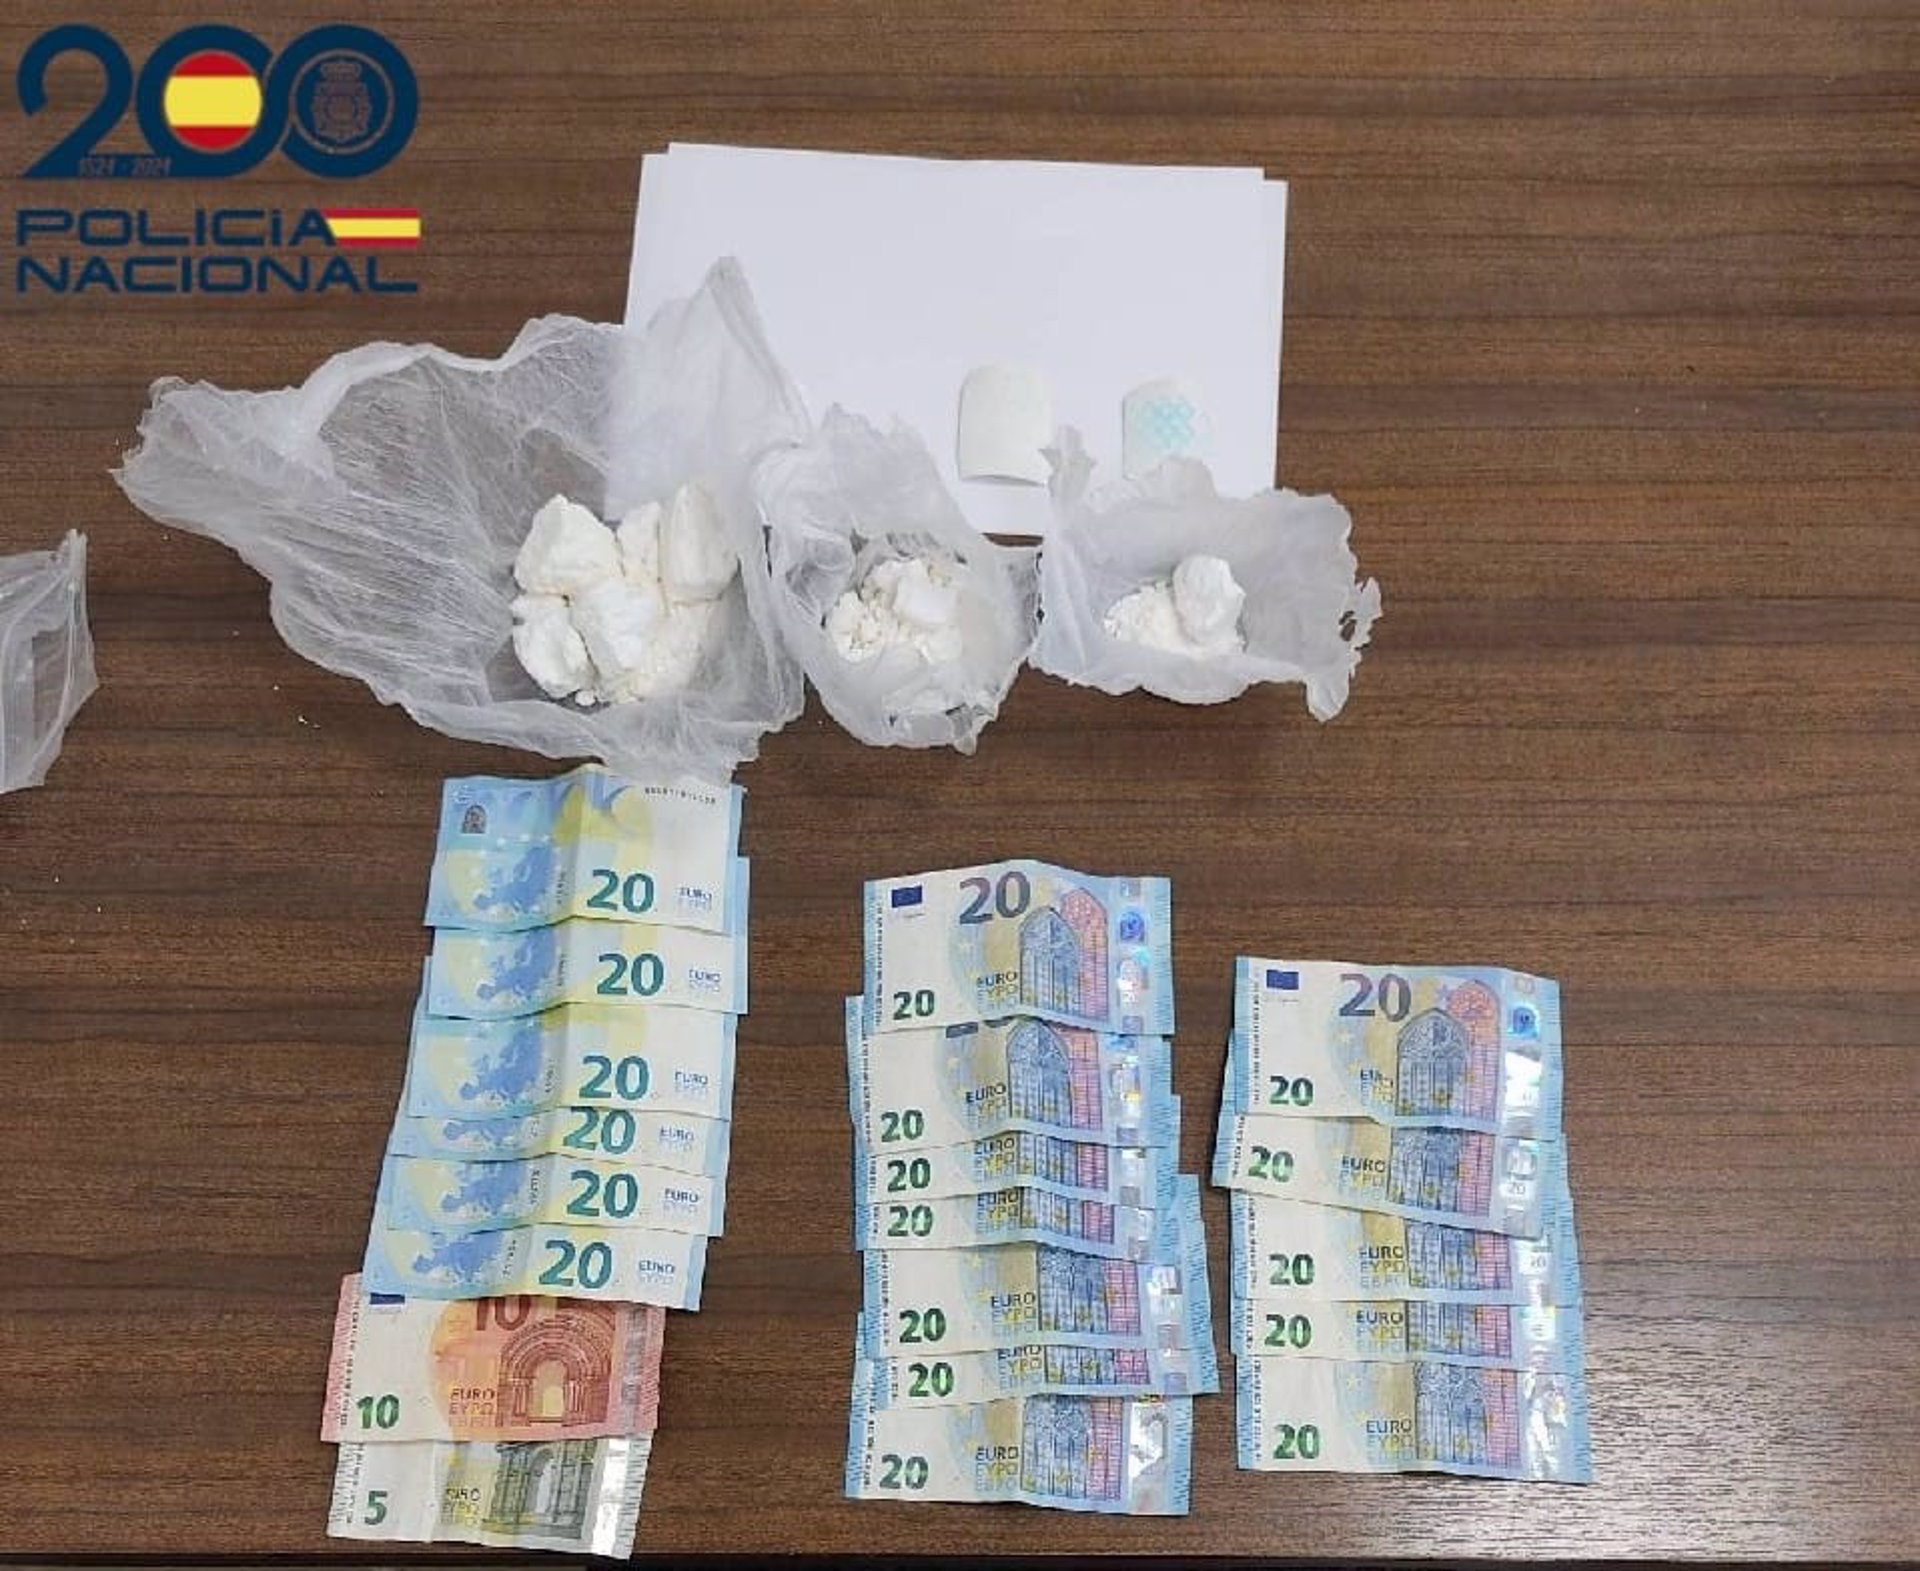 Drogas y dinero intervenido por la Policía Nacional - POLICÍA NACIONAL